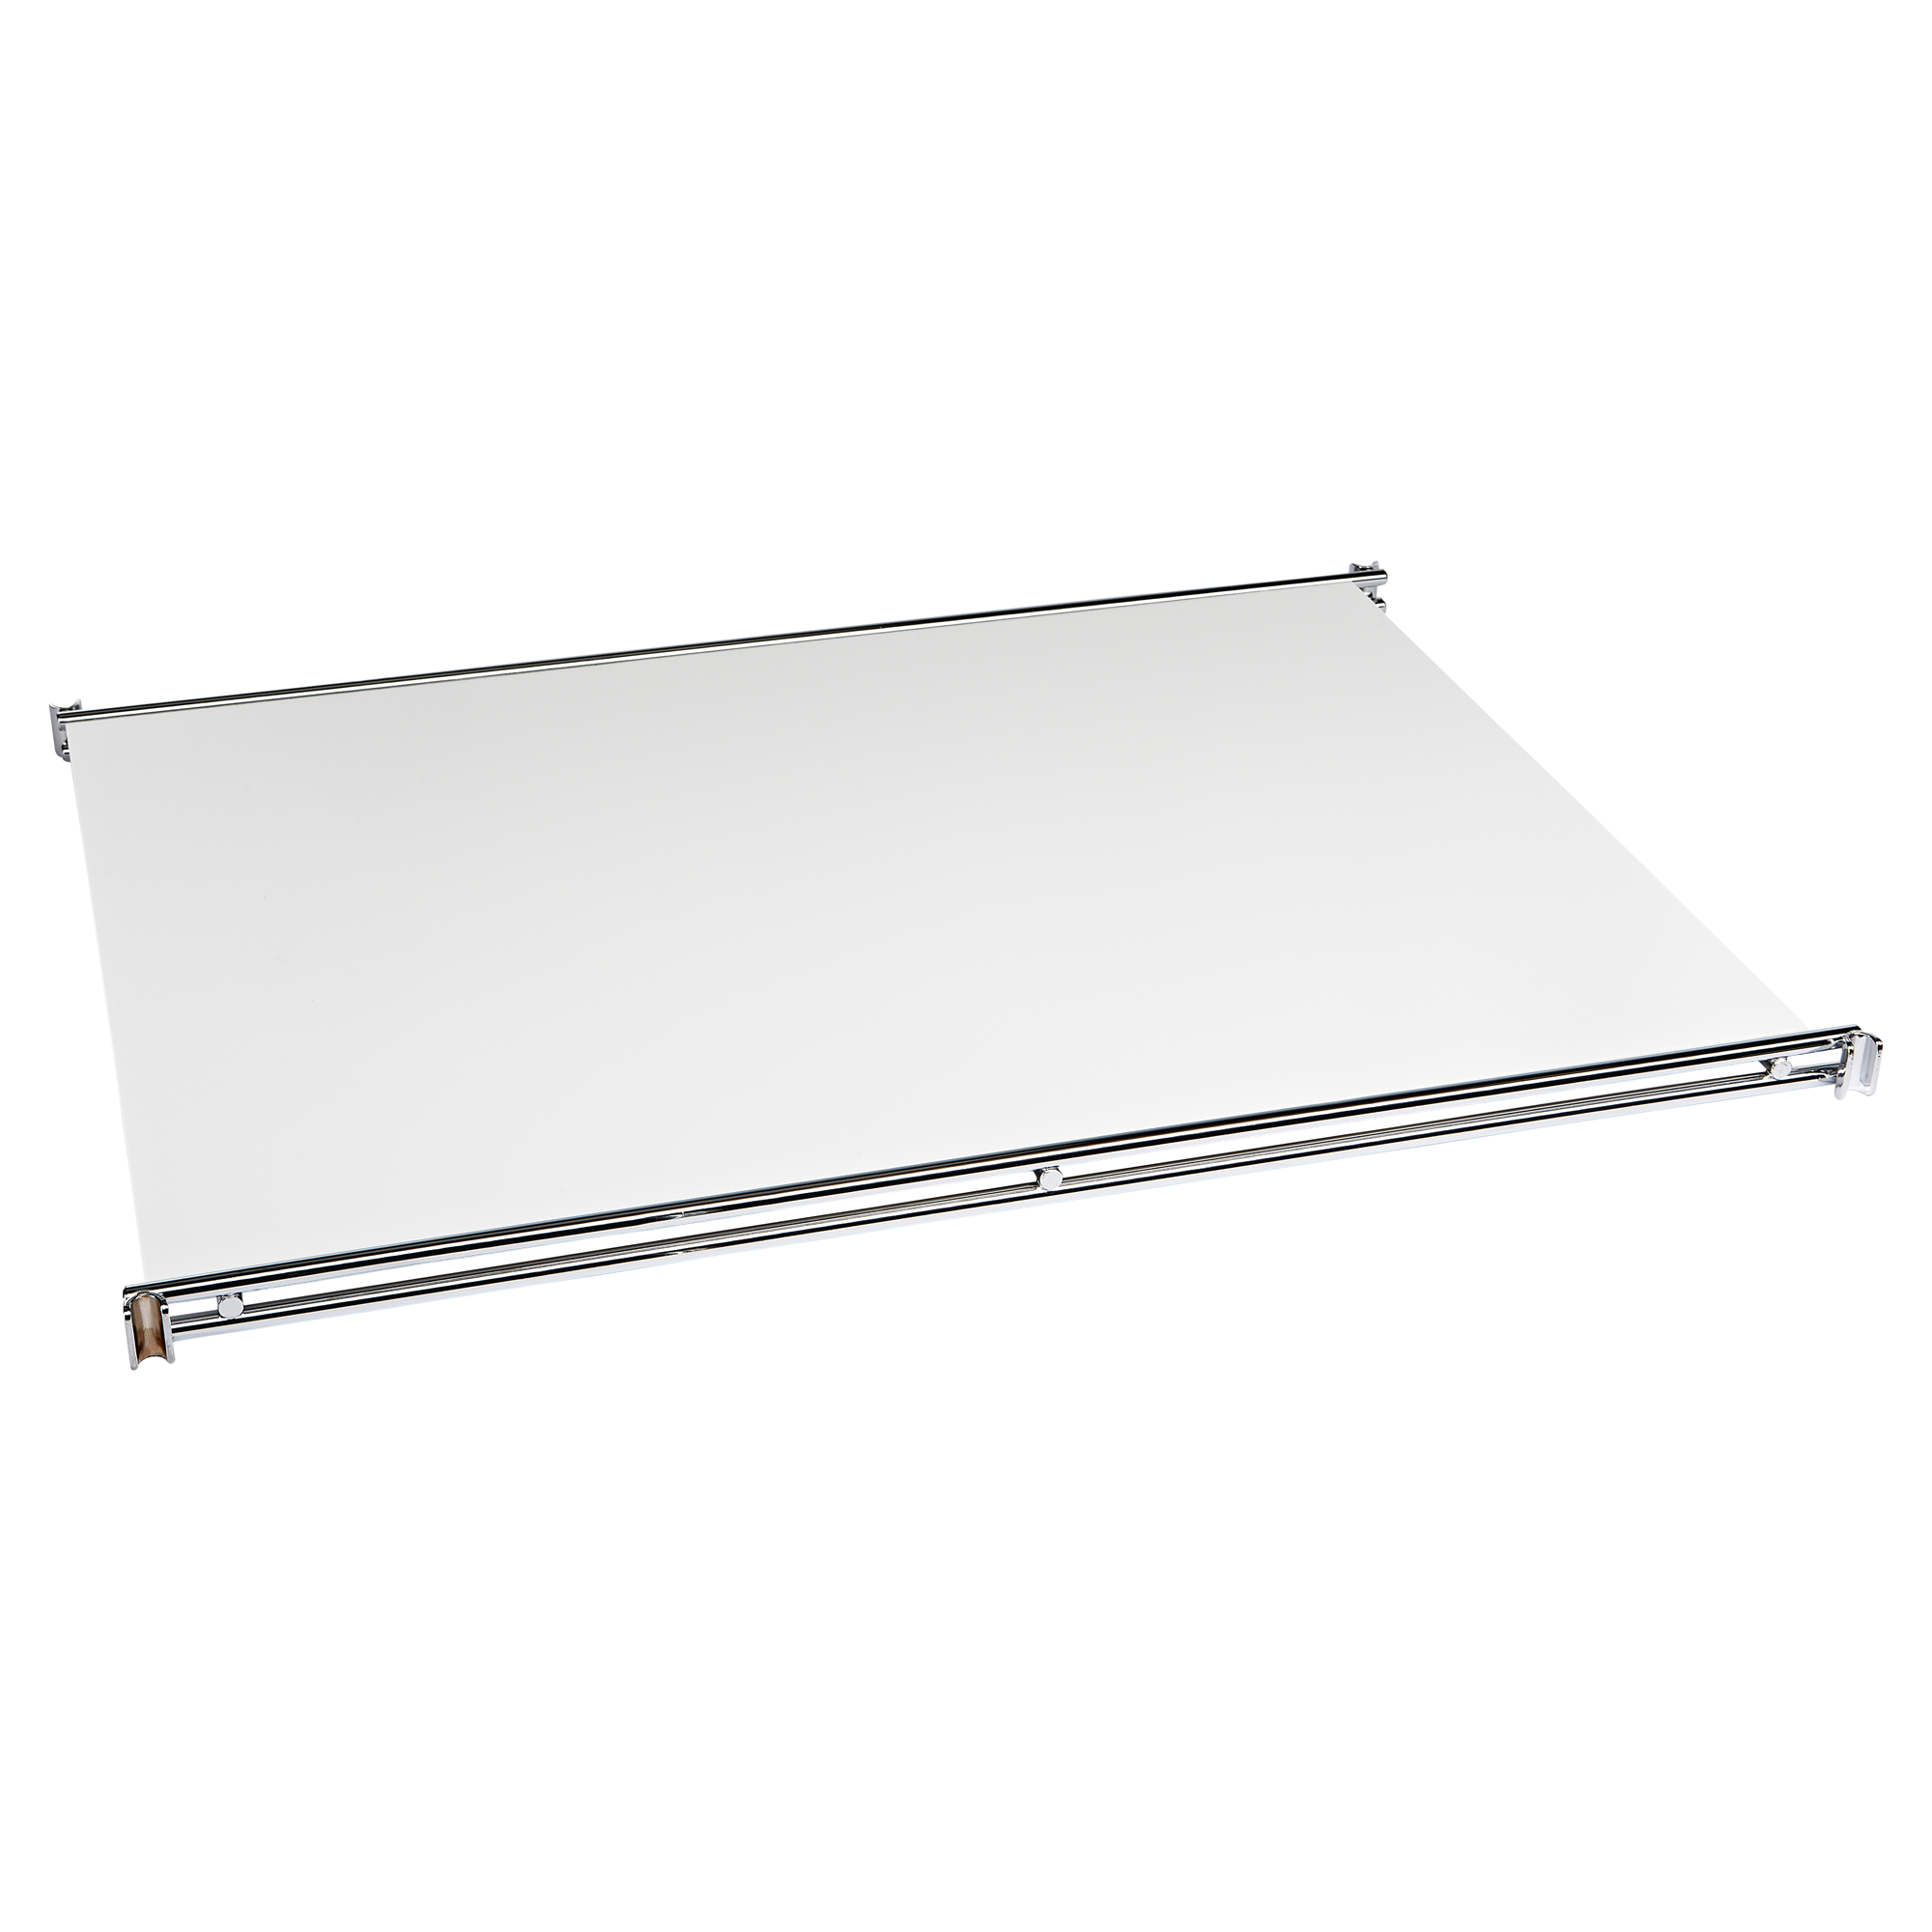 Regalboden ABS weiß 1,95 x 39 x 50 cm + product picture